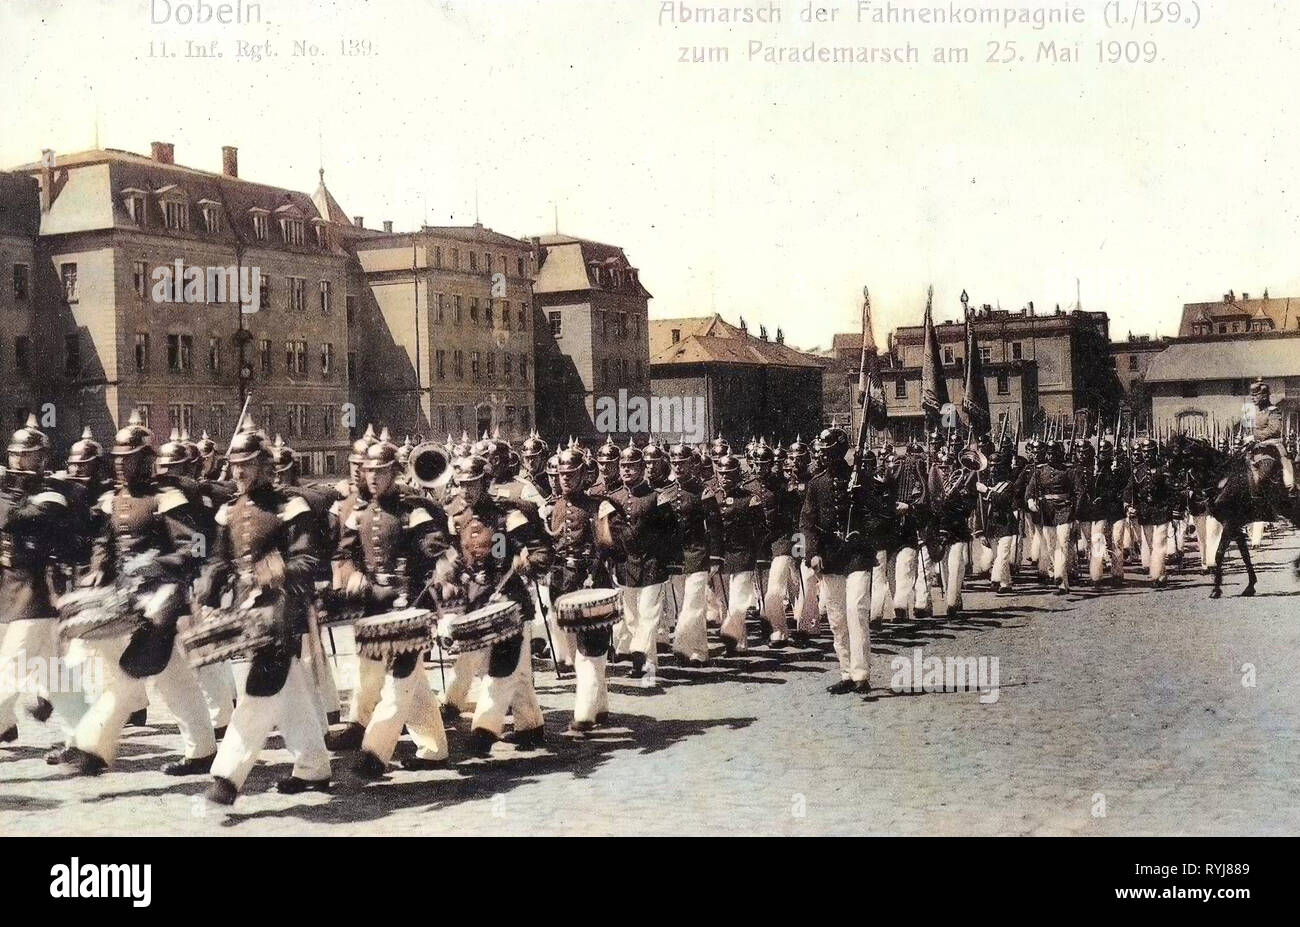 11. Königlich Sächsisches Infanterie-Regiment Nr. 139, 25 May, 1909 in Landkreis Mittelsachsen, 1909, Landkreis Mittelsachsen, Döbeln, Abmarsch der Fahnenkompanie, 11. Infanterie Regiment Nr. 139, Germany Stock Photo